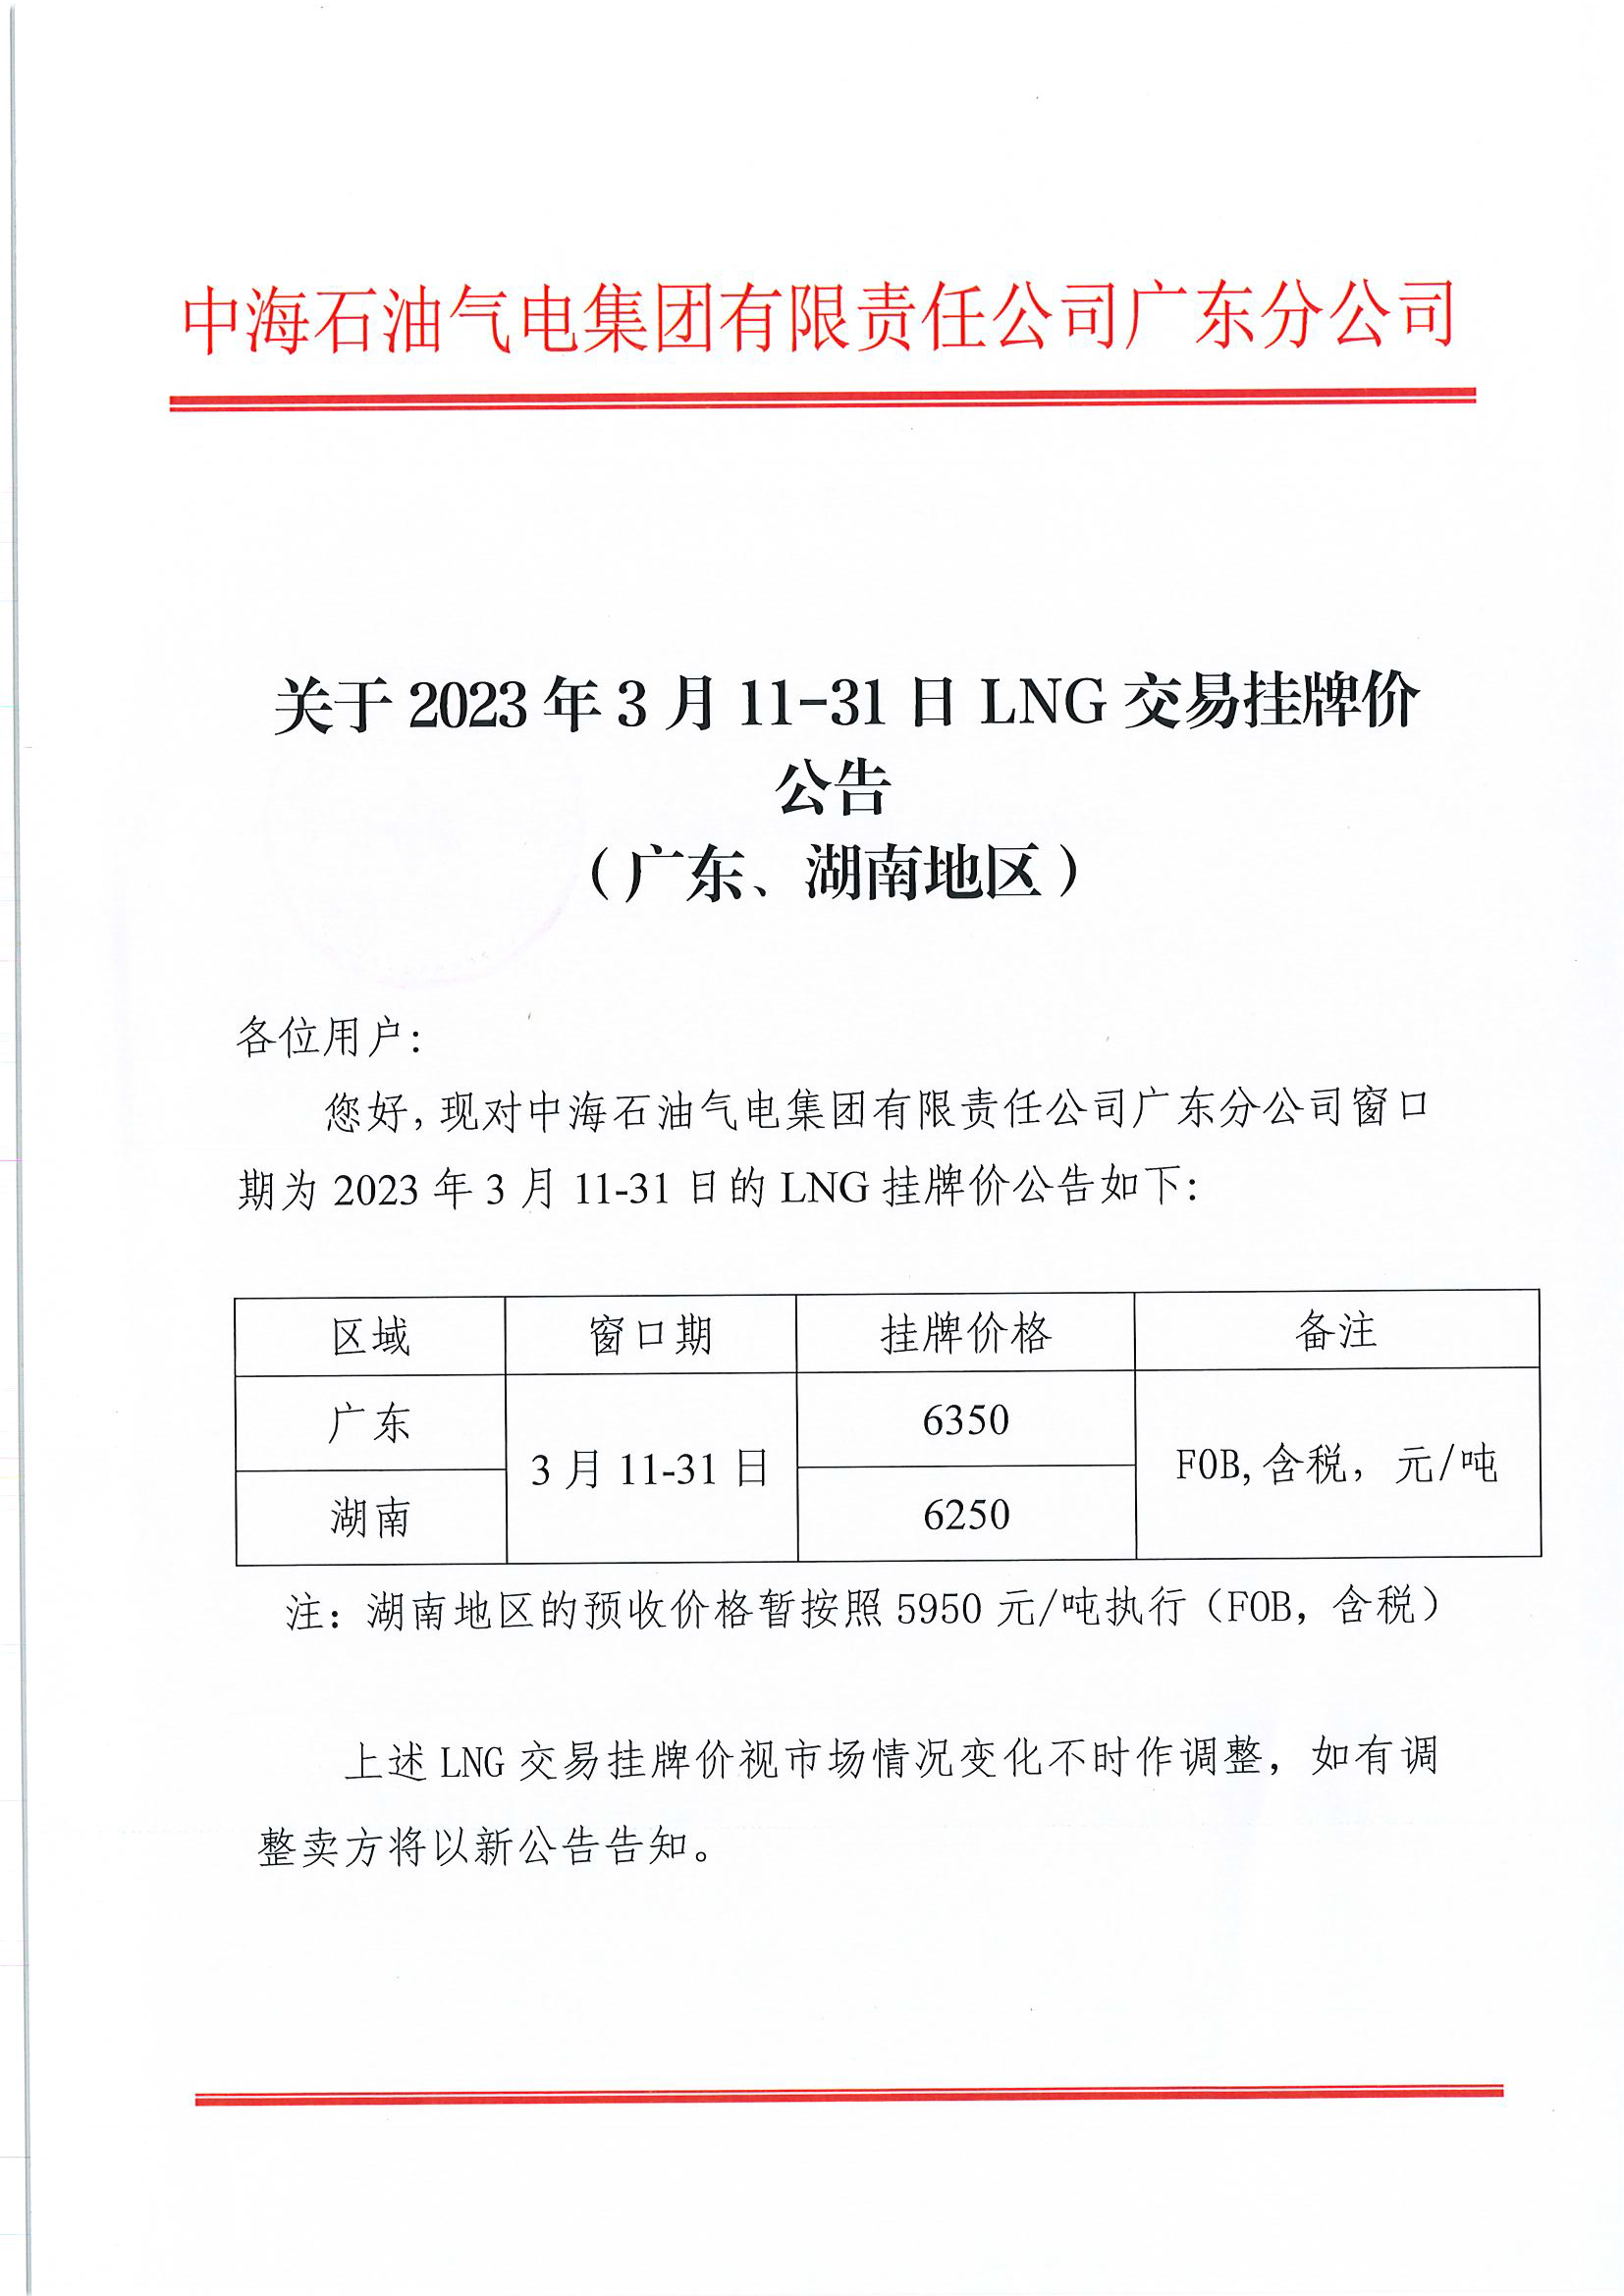 中海石油气电集团有限责任公司广东分公司关于2023年3月11-31日LNG交易挂牌价公告（广东、湖南地区）_页面_1.png